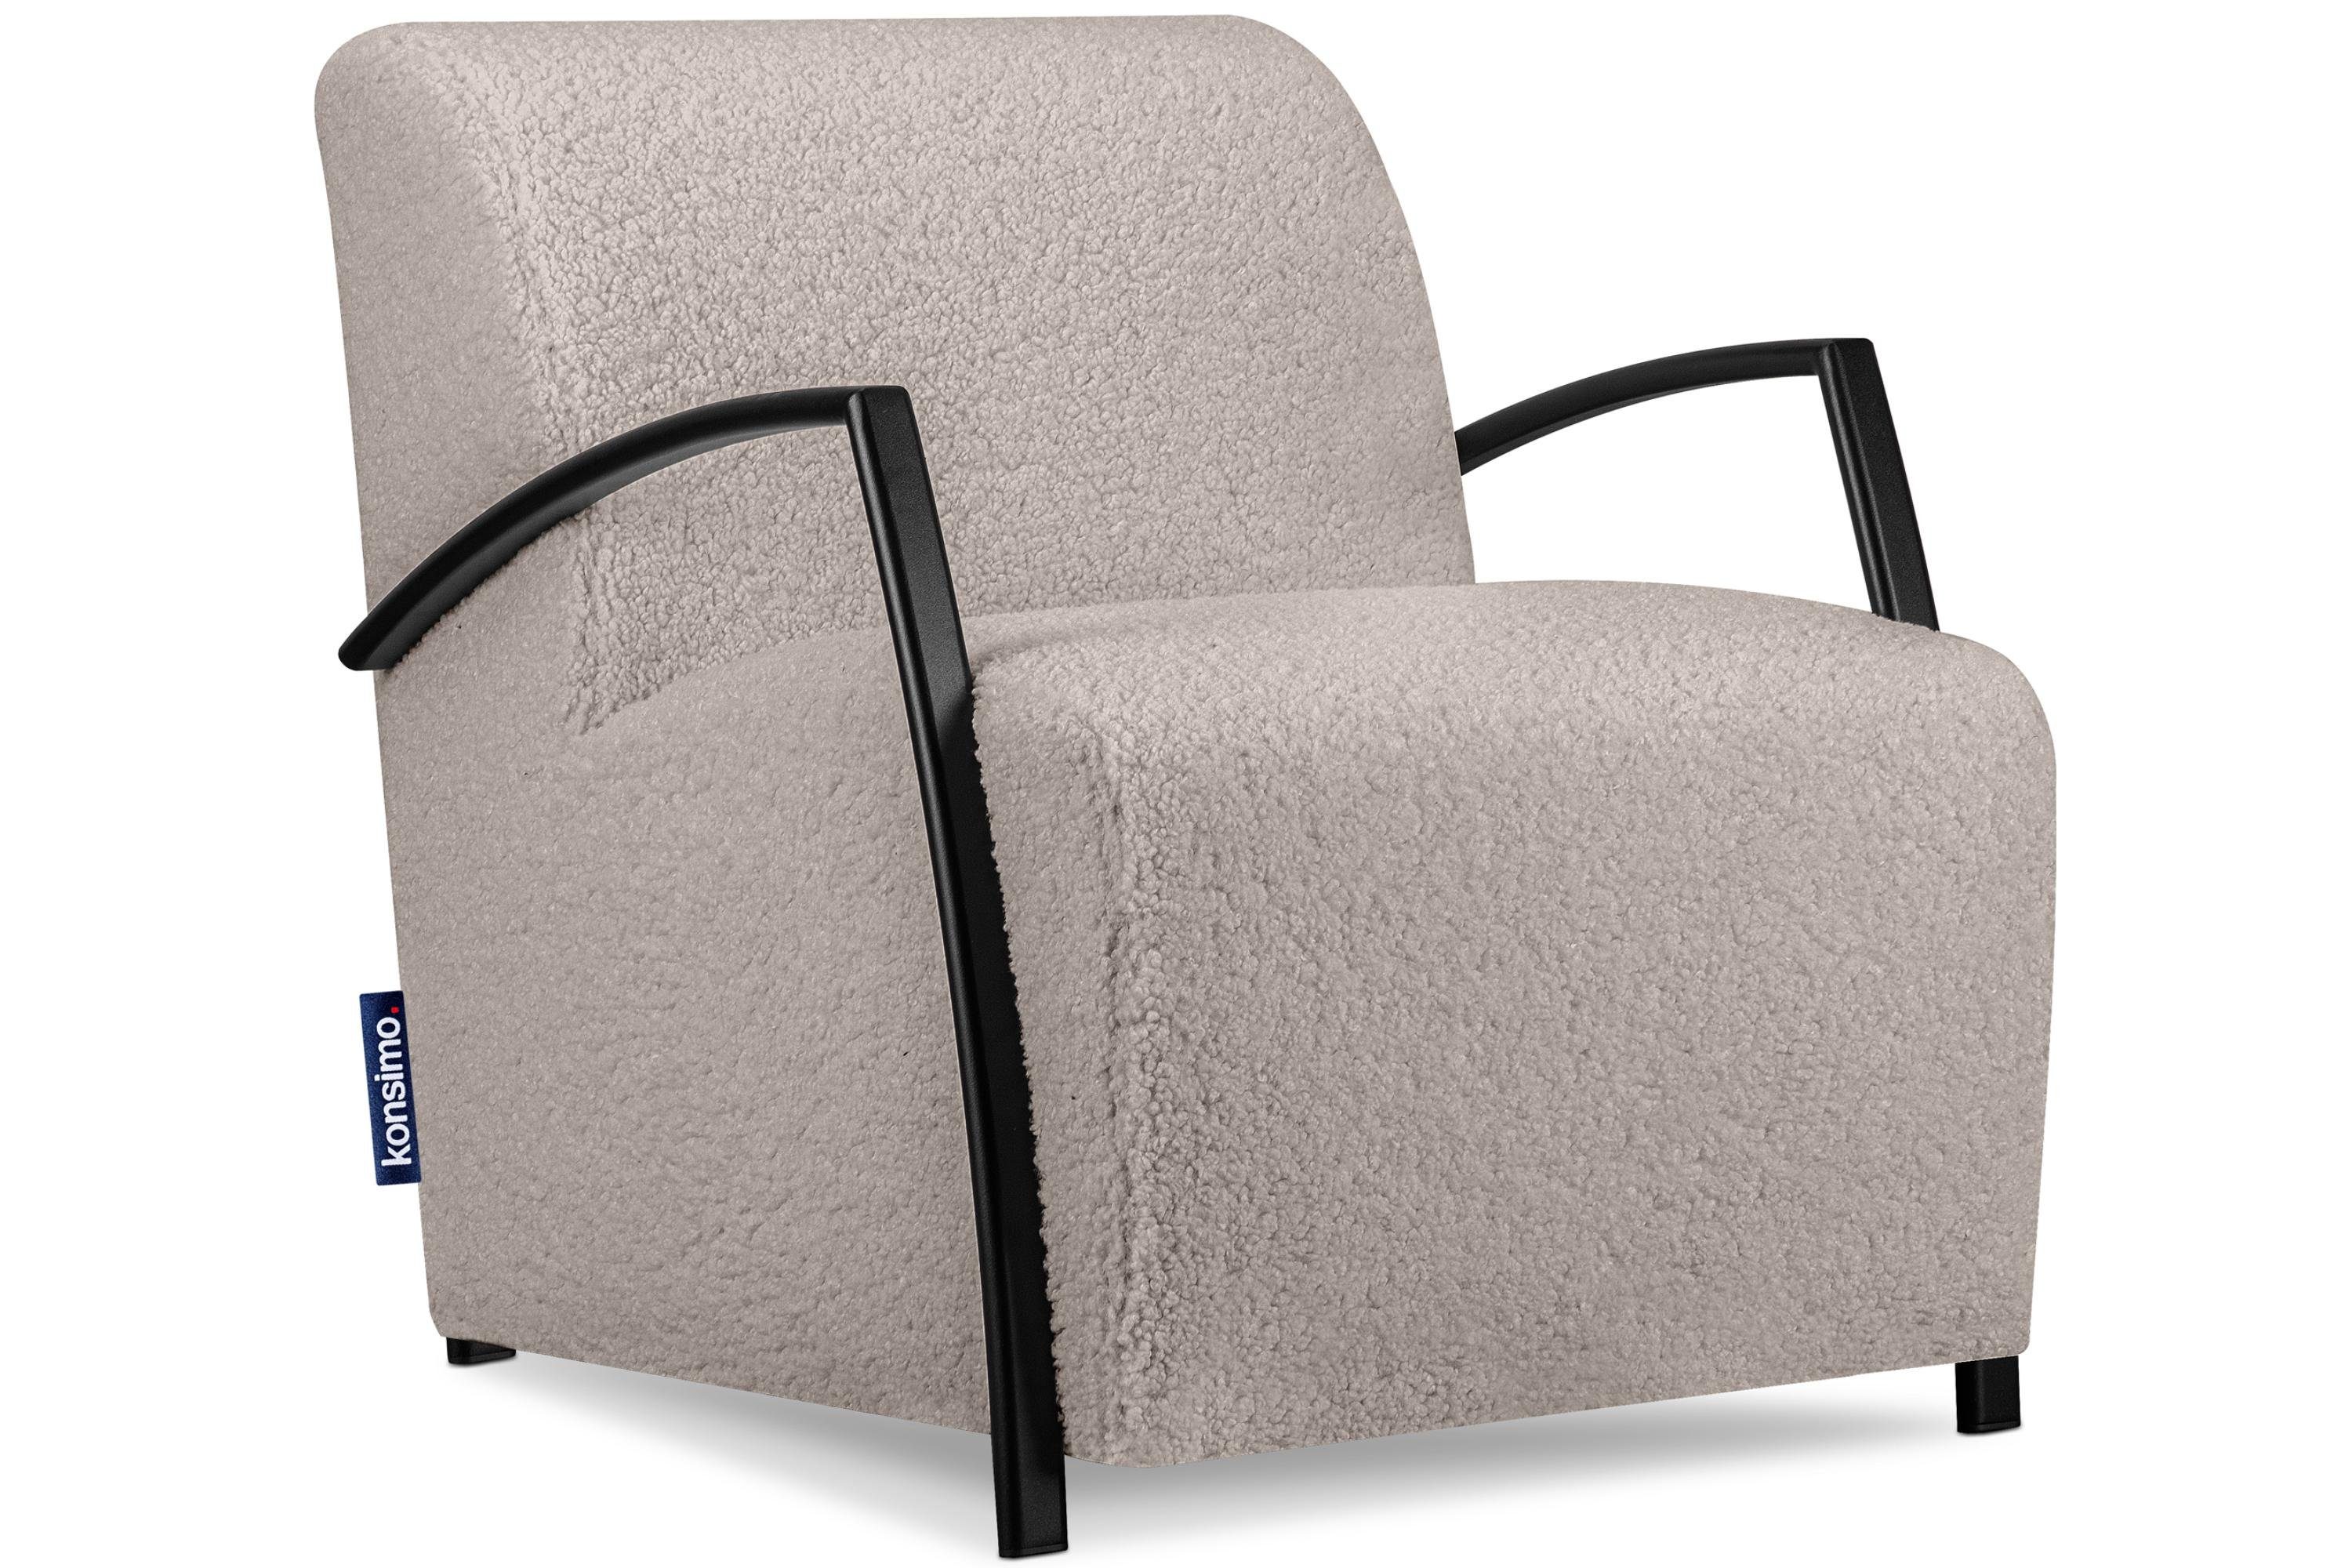 Konsimo Cocktailsessel CARO Sessel, mit gewellter Feder im Sitz, ergonomische Form für bequemes Sitzen hellbraun | hellbraun